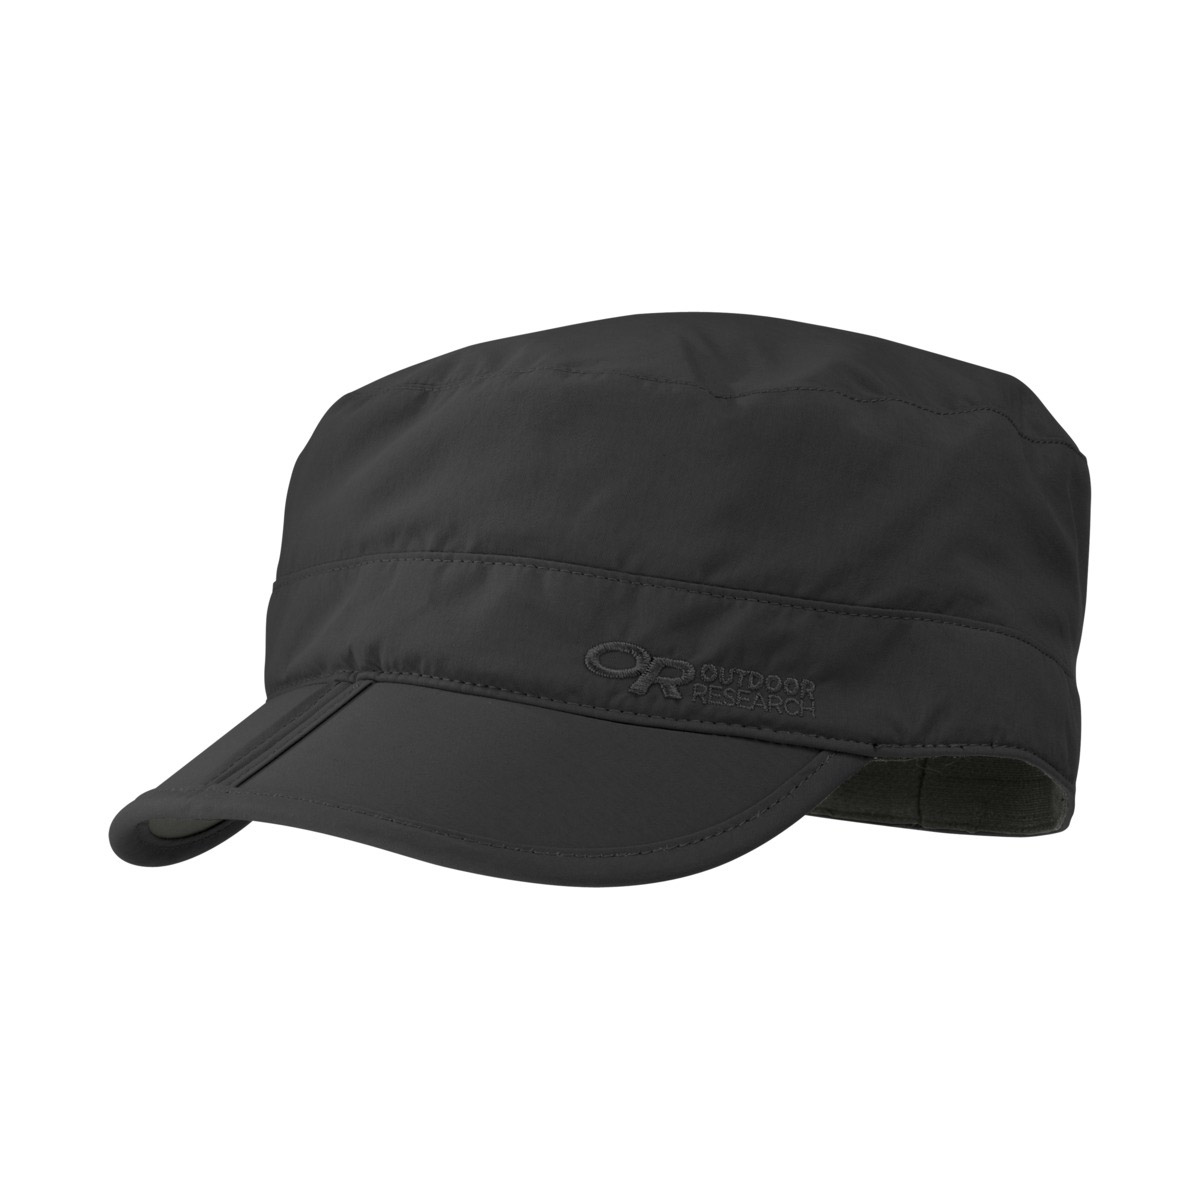 Outdoor Research Radar Pocket Cap - Black